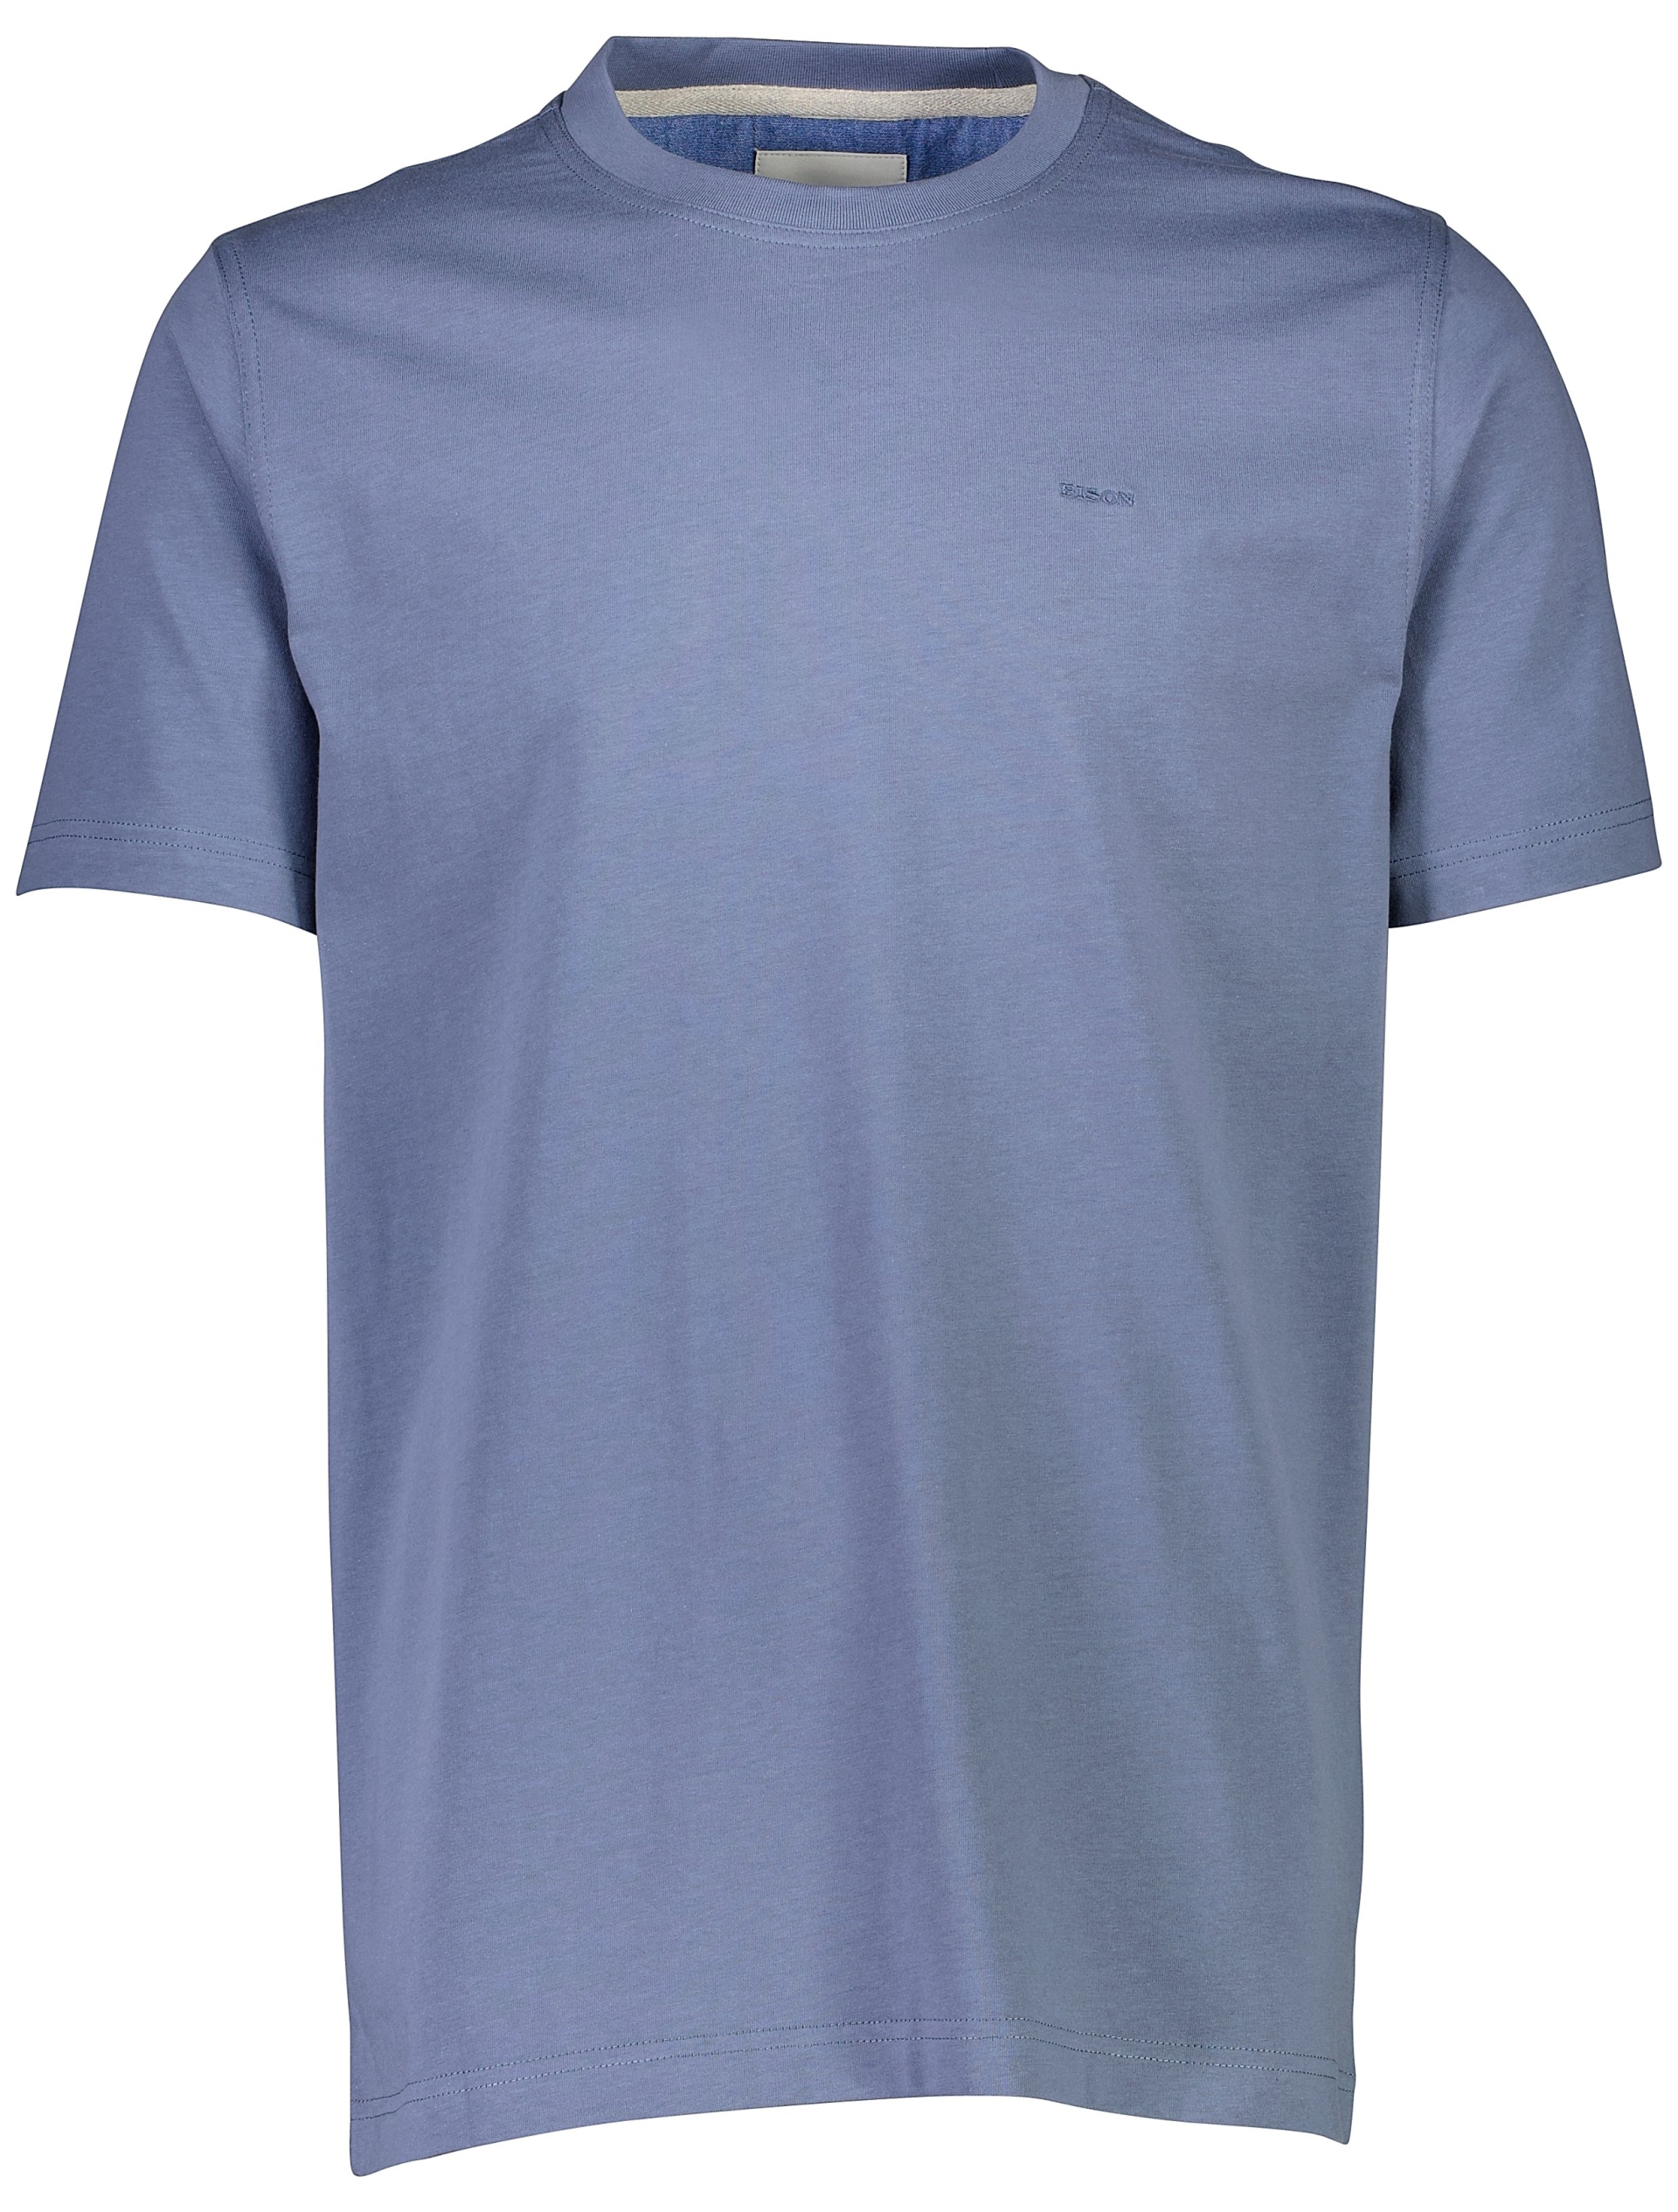 Bison T-shirt blå / steel blue 224